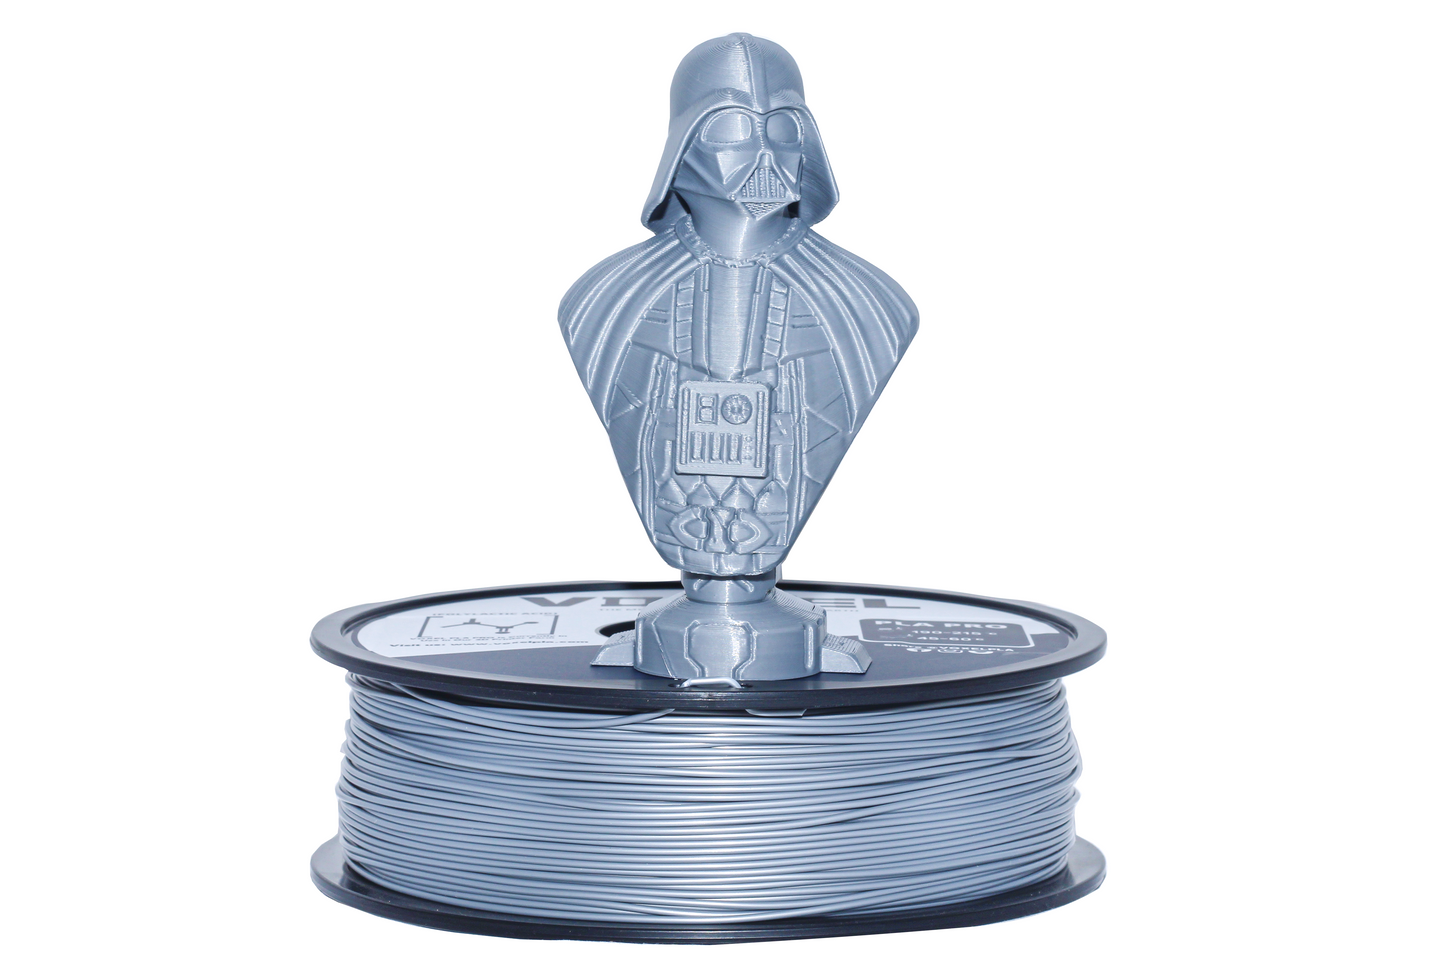 VOXELPLA PLA Plus (Pro) Silver 1.75mm Filament (1kg)